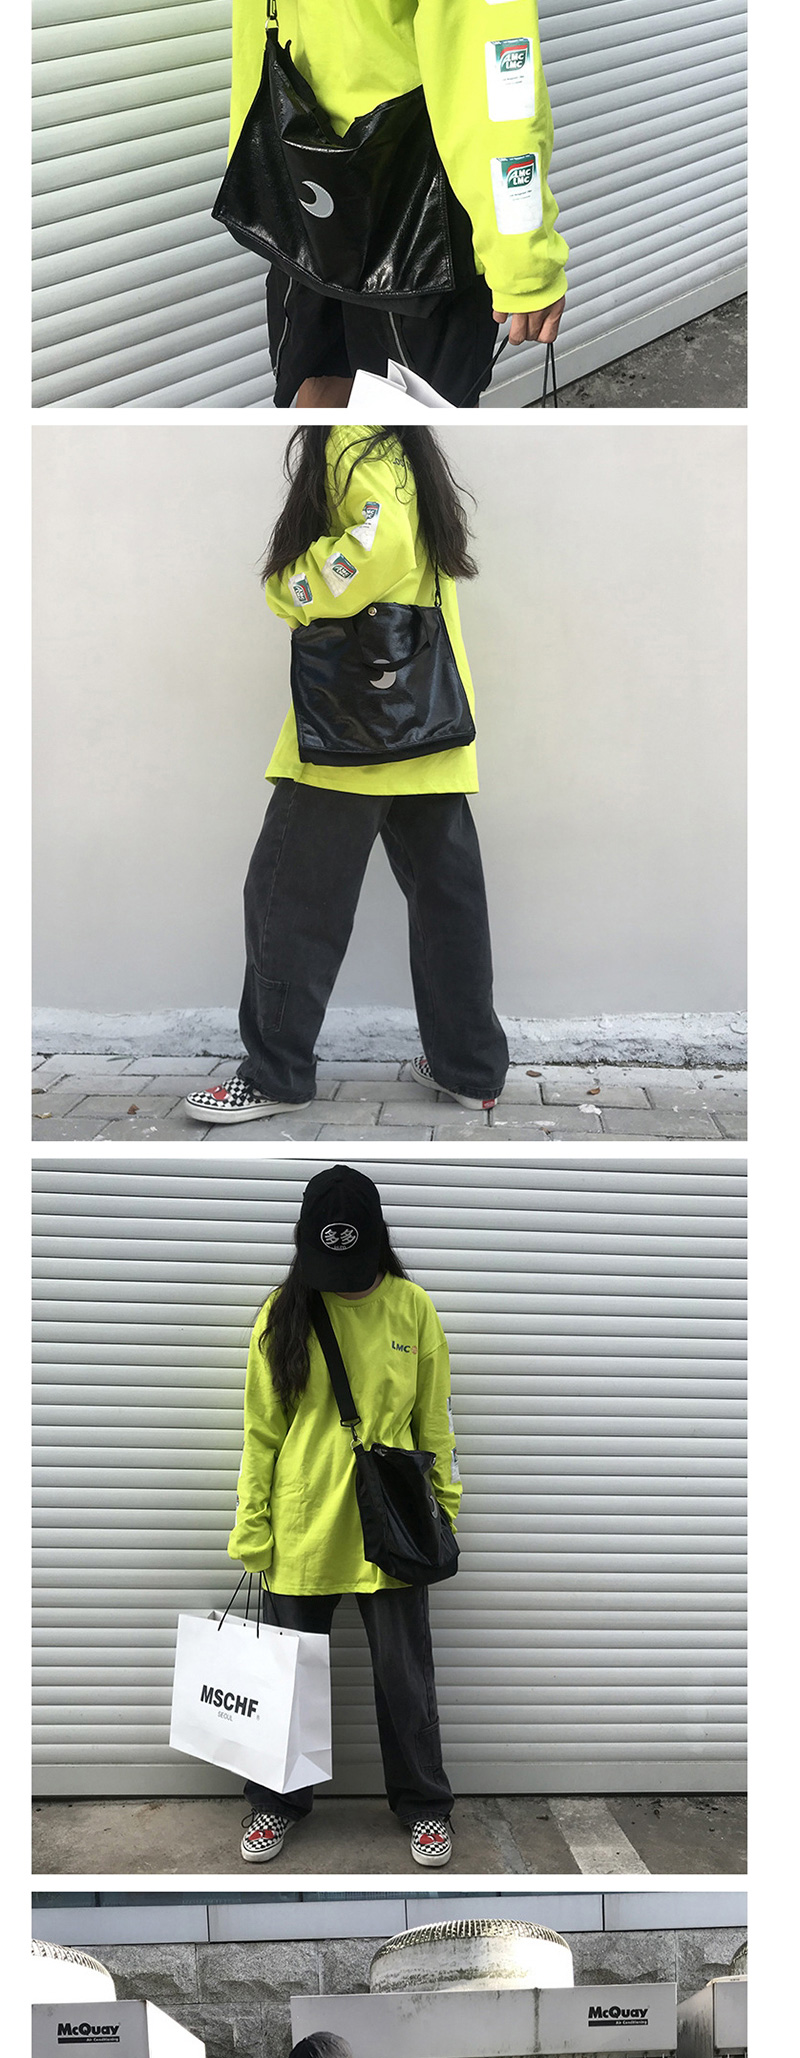 Fashion Black Moon Shoulder Messenger Bag,Shoulder bags